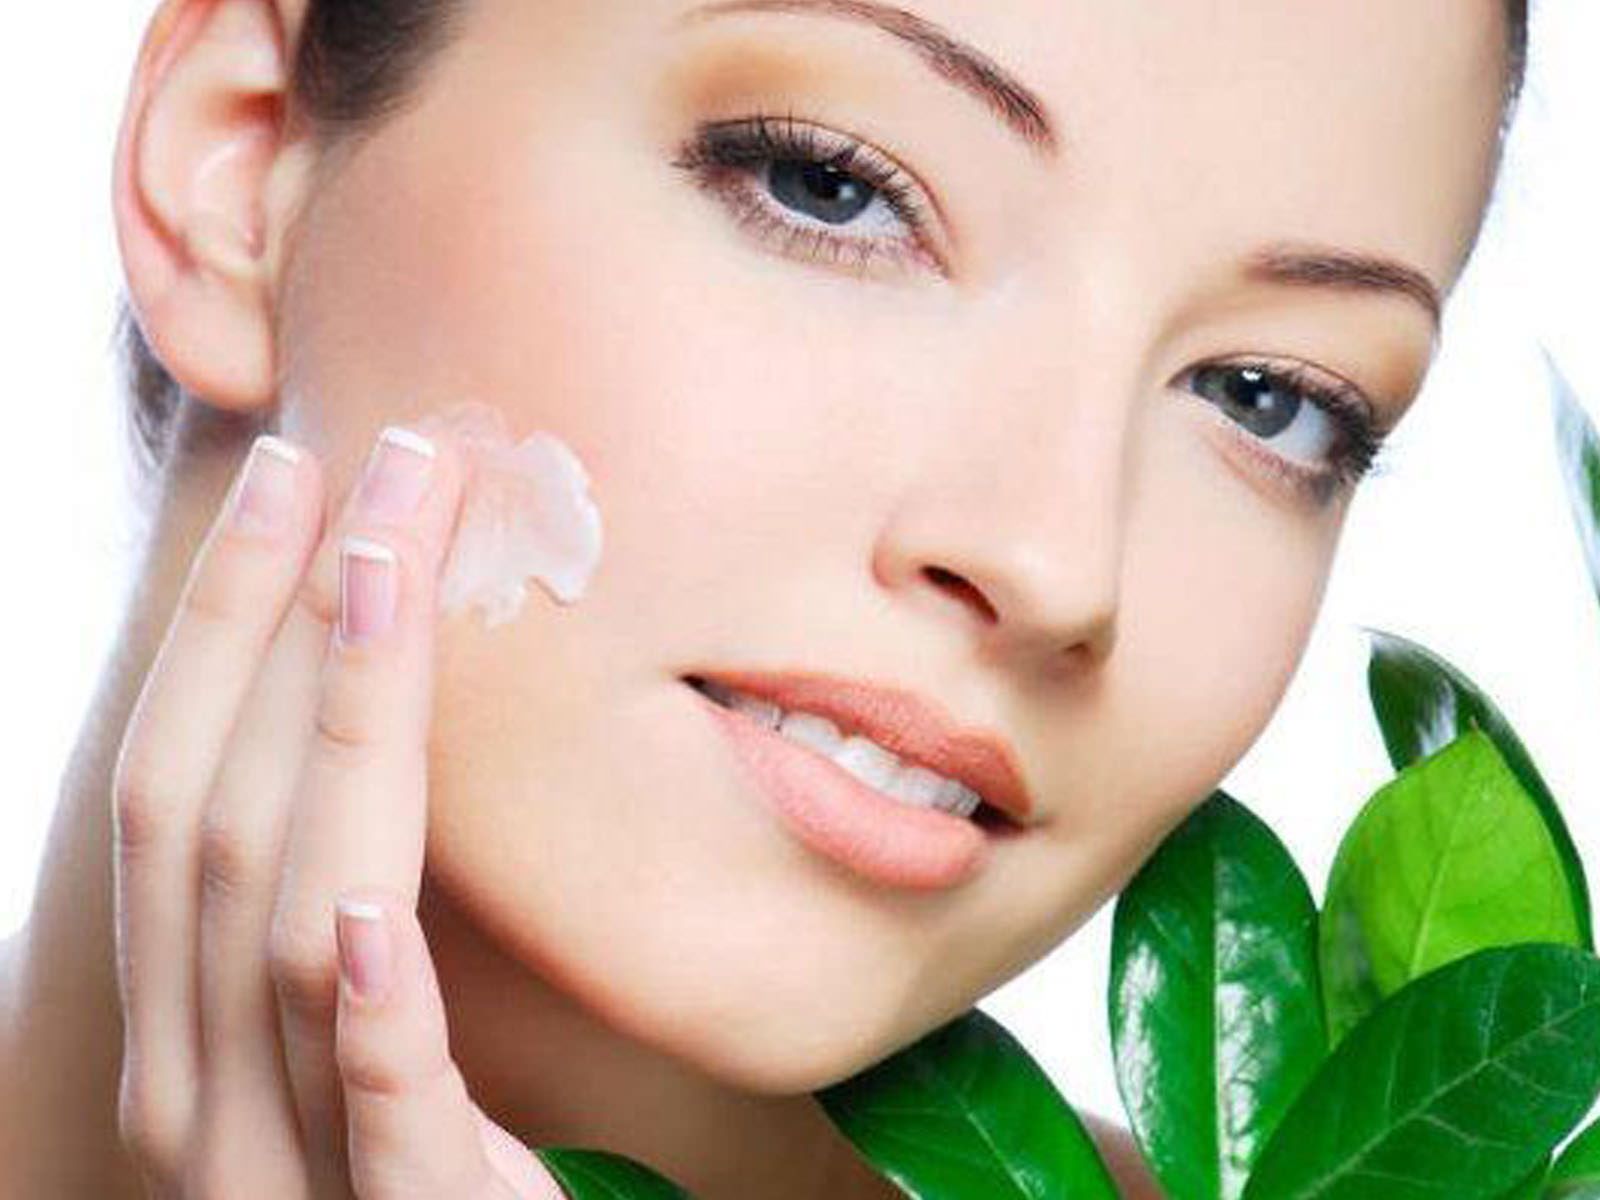 Come prendersi cura della pelle del viso